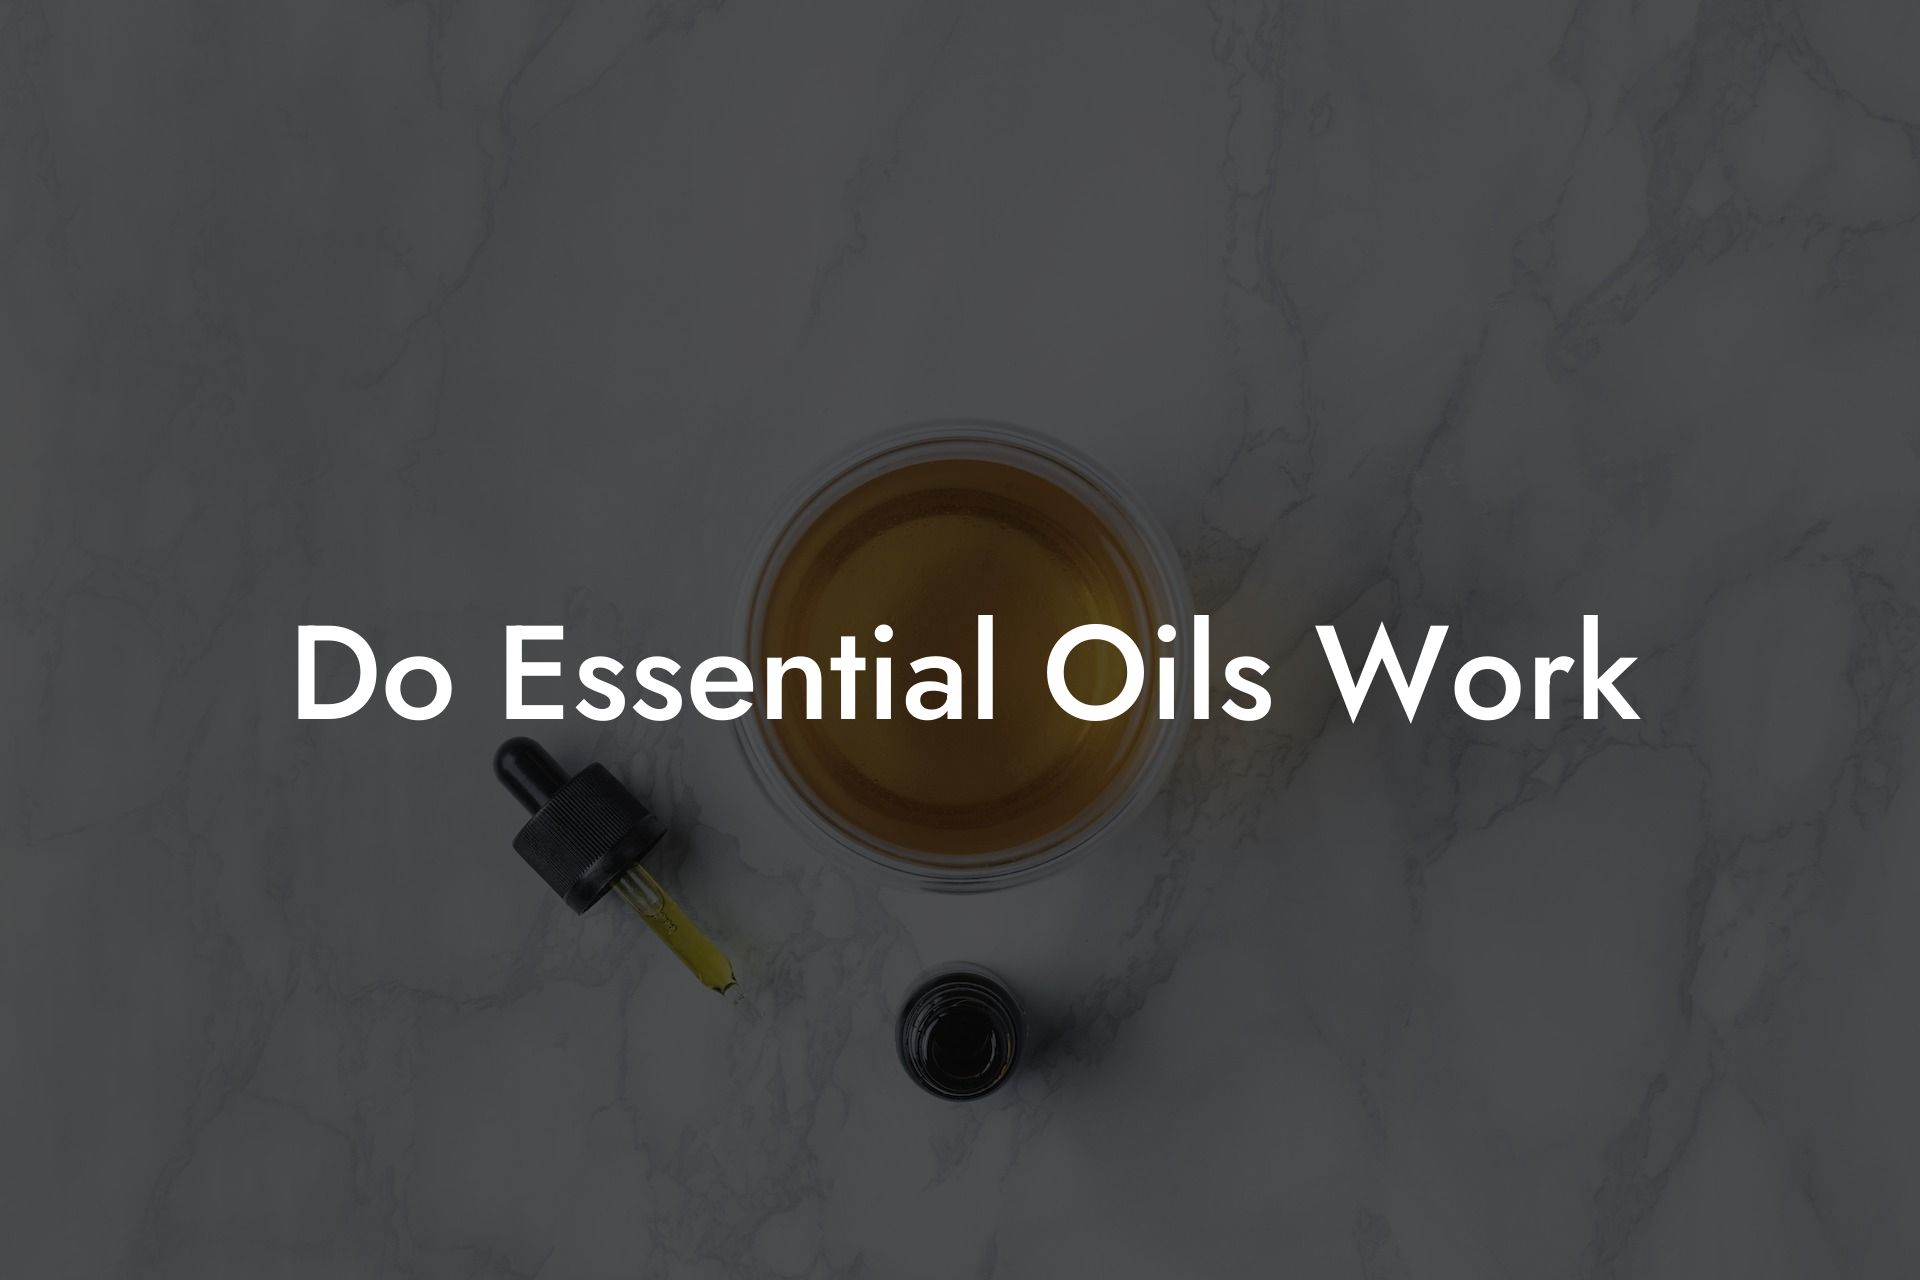 Do Essential Oils Work